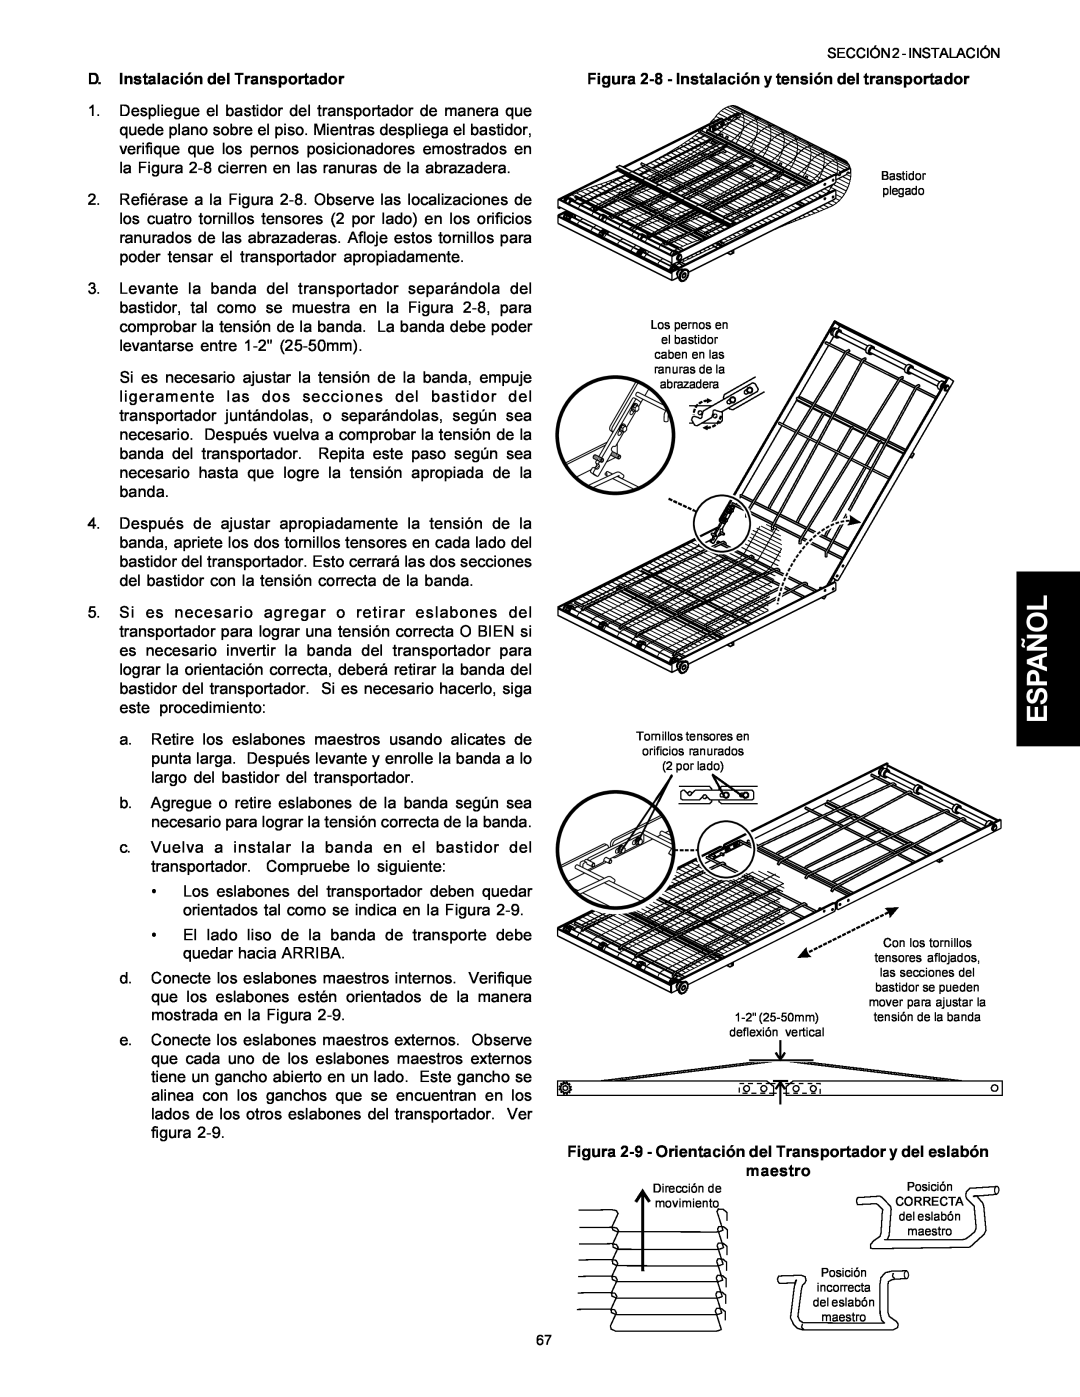 Middleby Marshall Model PS536 installation manual Español, D. Instalación del Transportador 